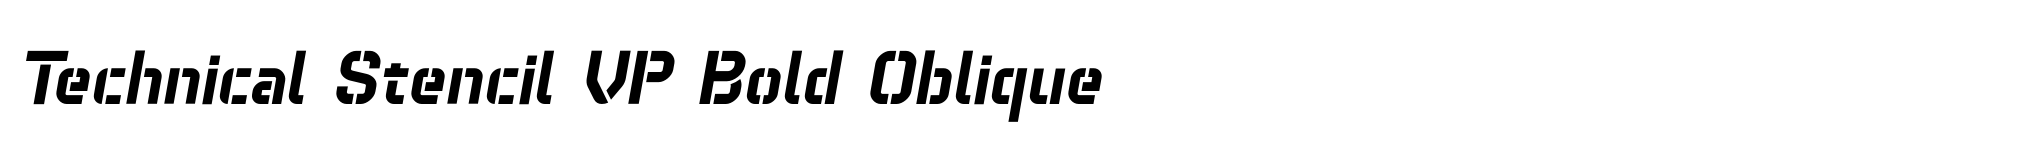 Technical Stencil VP Bold Oblique image